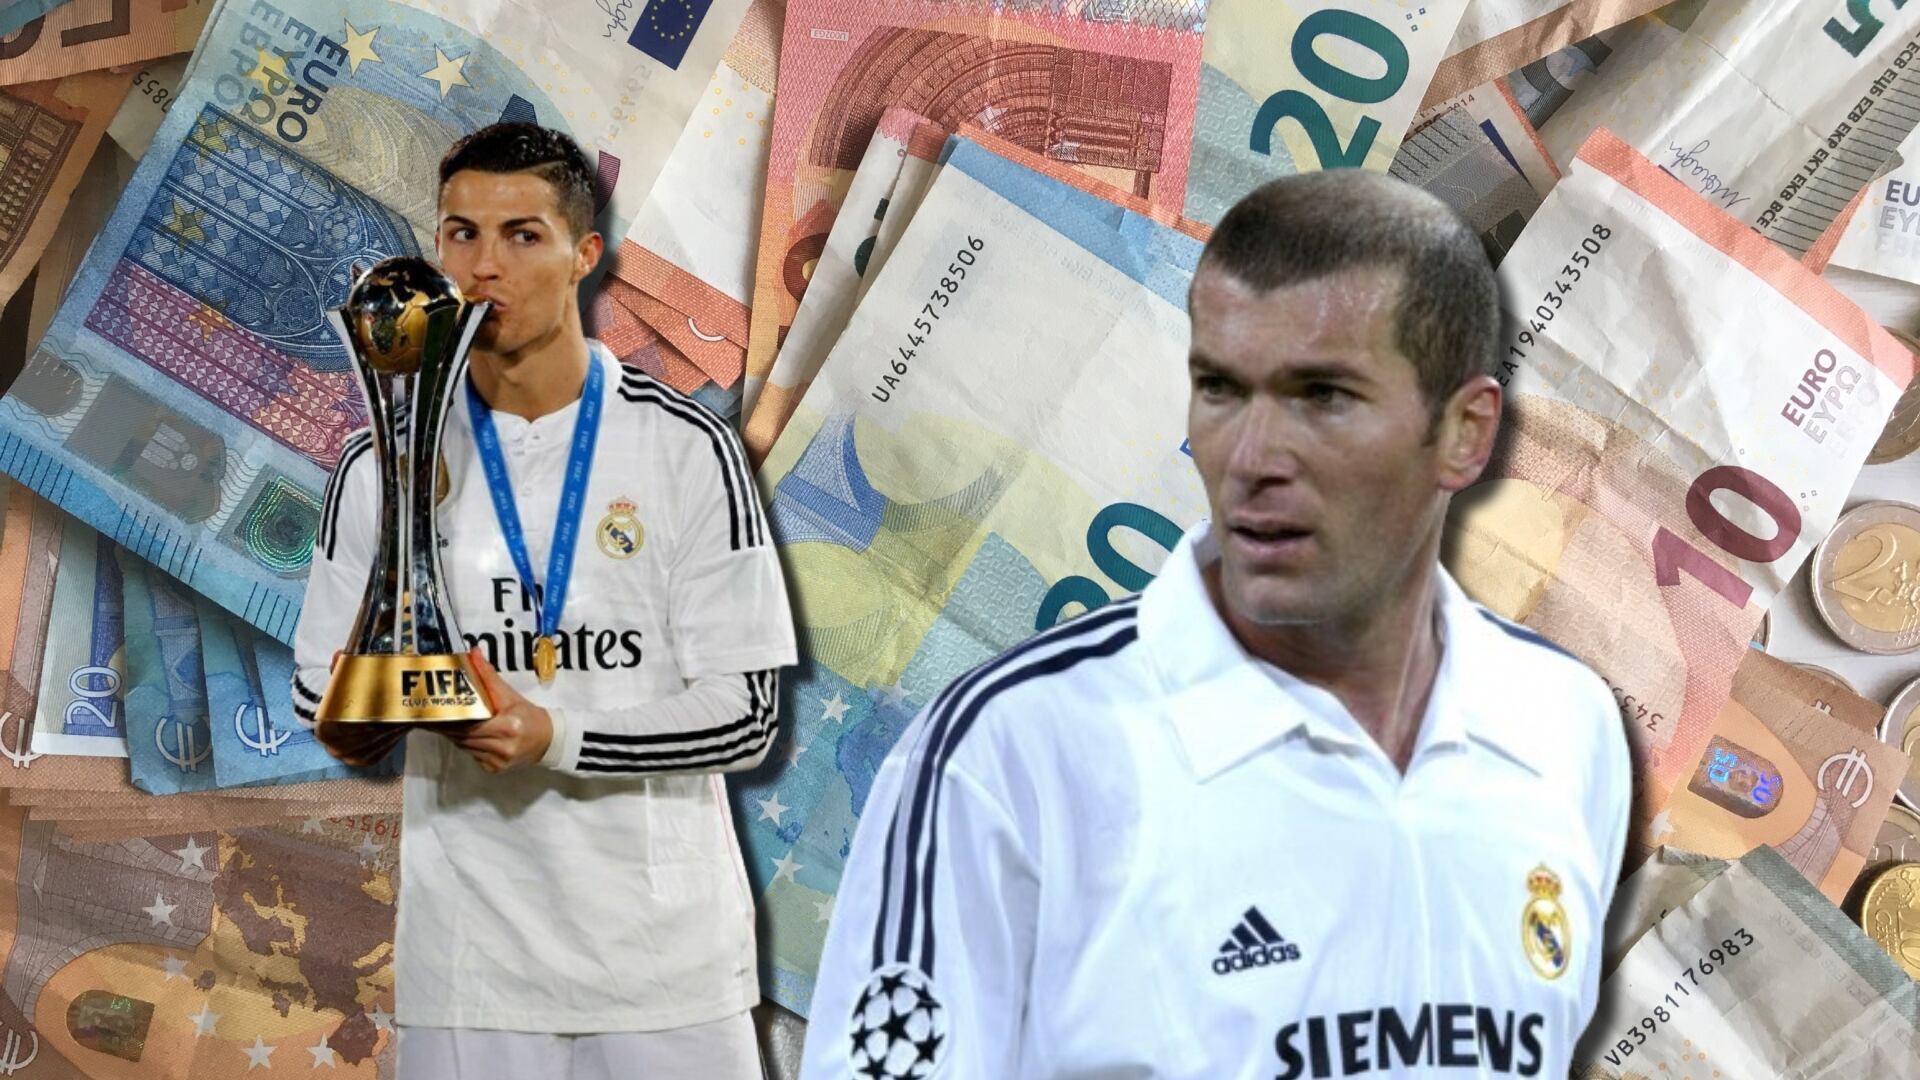 Mientras Cristiano Ronaldo compró libros, esto hizo Zidane con su primer salario